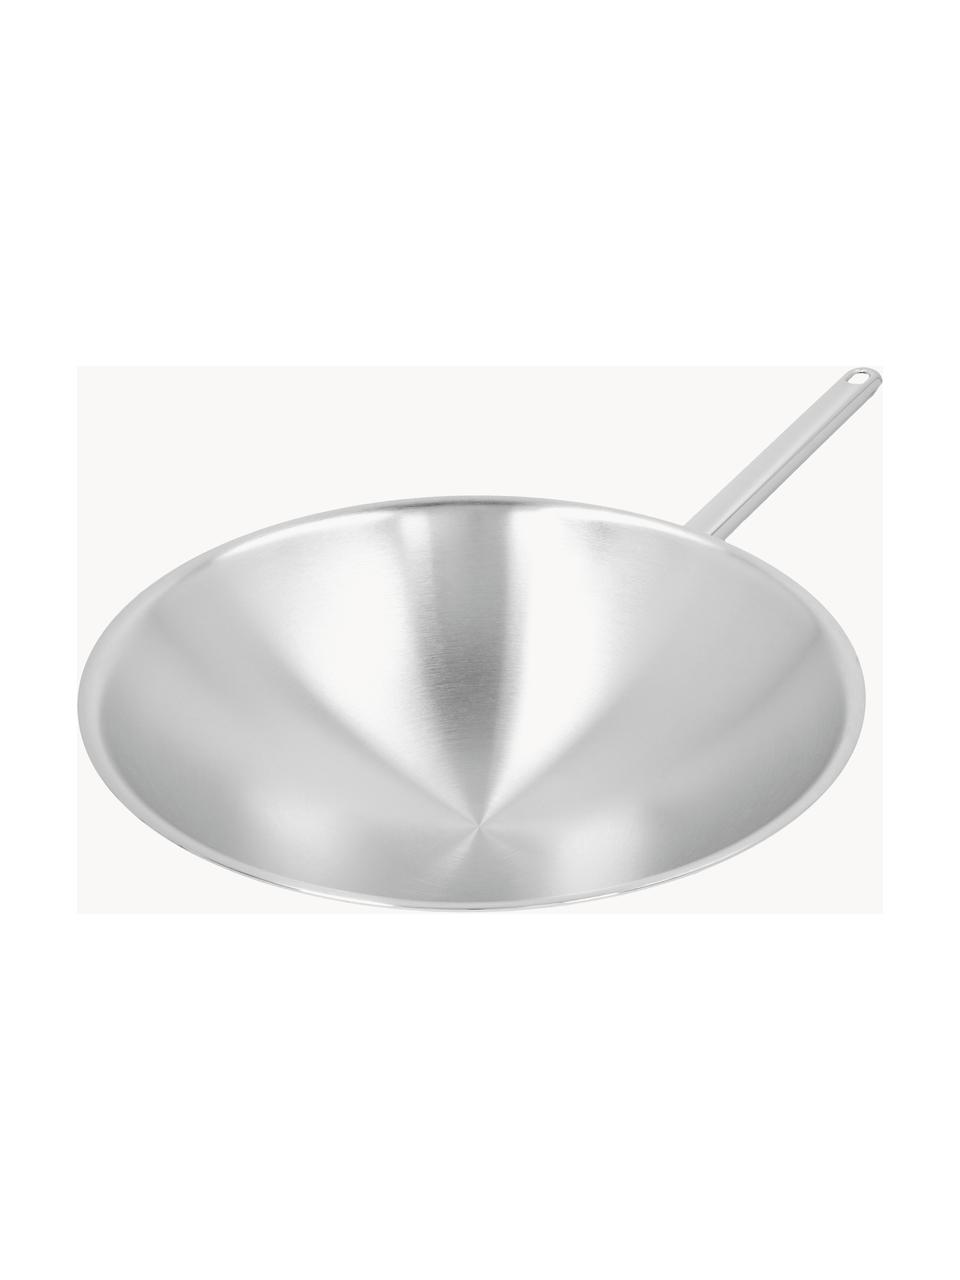 Pánev wok z nerezové oceli Atlantis, Nerezová ocel 18/10, Stříbrná, Ø 36 cm, V 12 cm